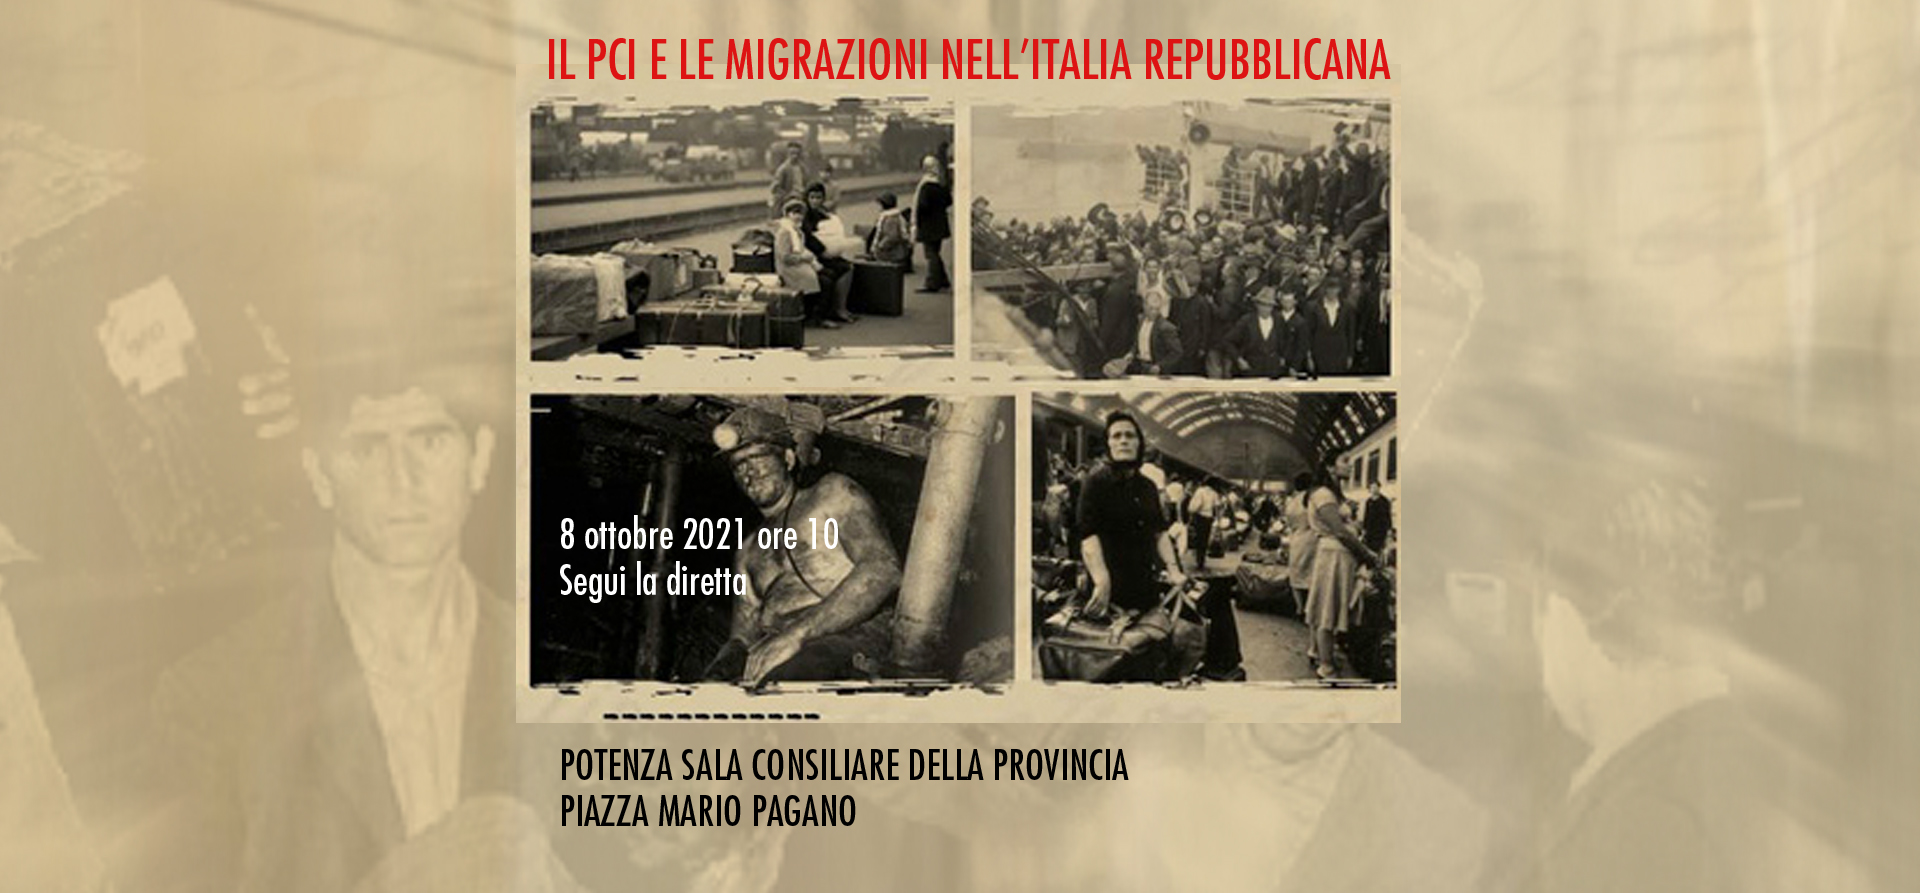 IL PCI E LE MIGRAZIONI NELL’ITALIA REPUBBLICANA